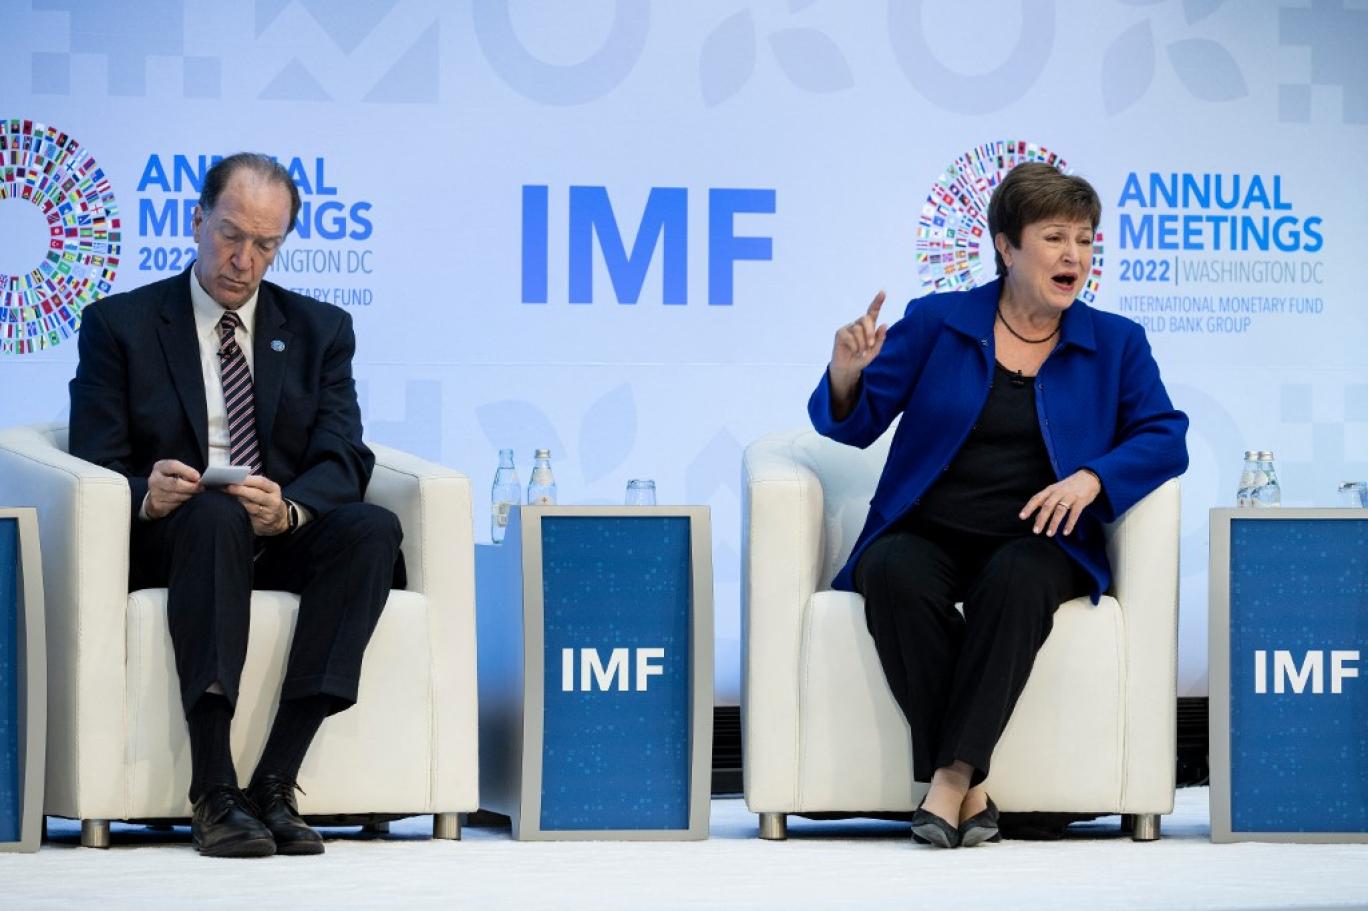 صندوق النقد والبنك الدوليان يدرسان إمكانية تقليل مدة اجتماعاتهما بمراكش وتقليص عدد الحضور